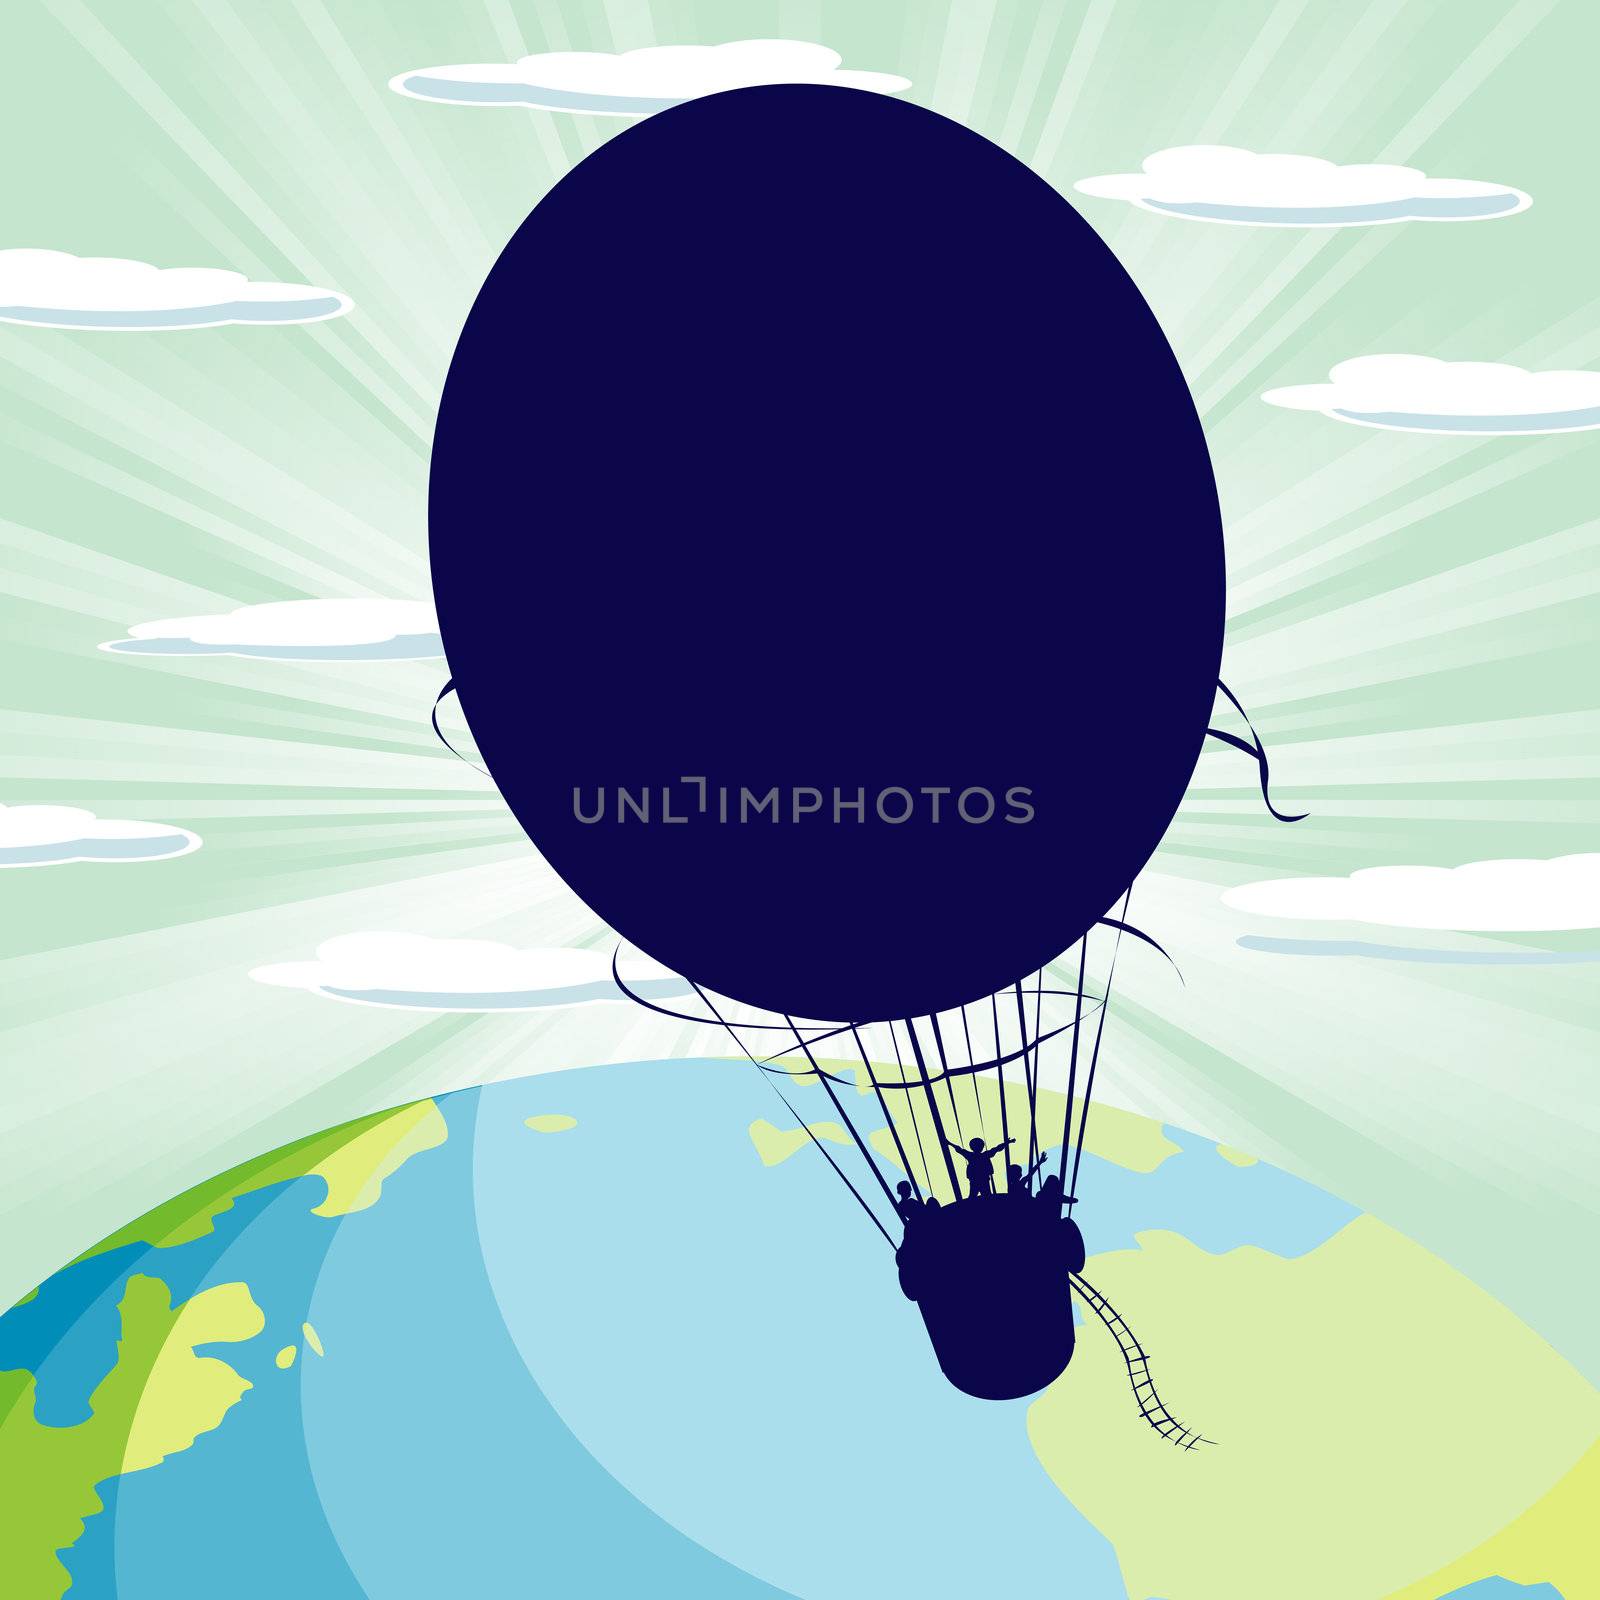 Hot air balloon by Lirch